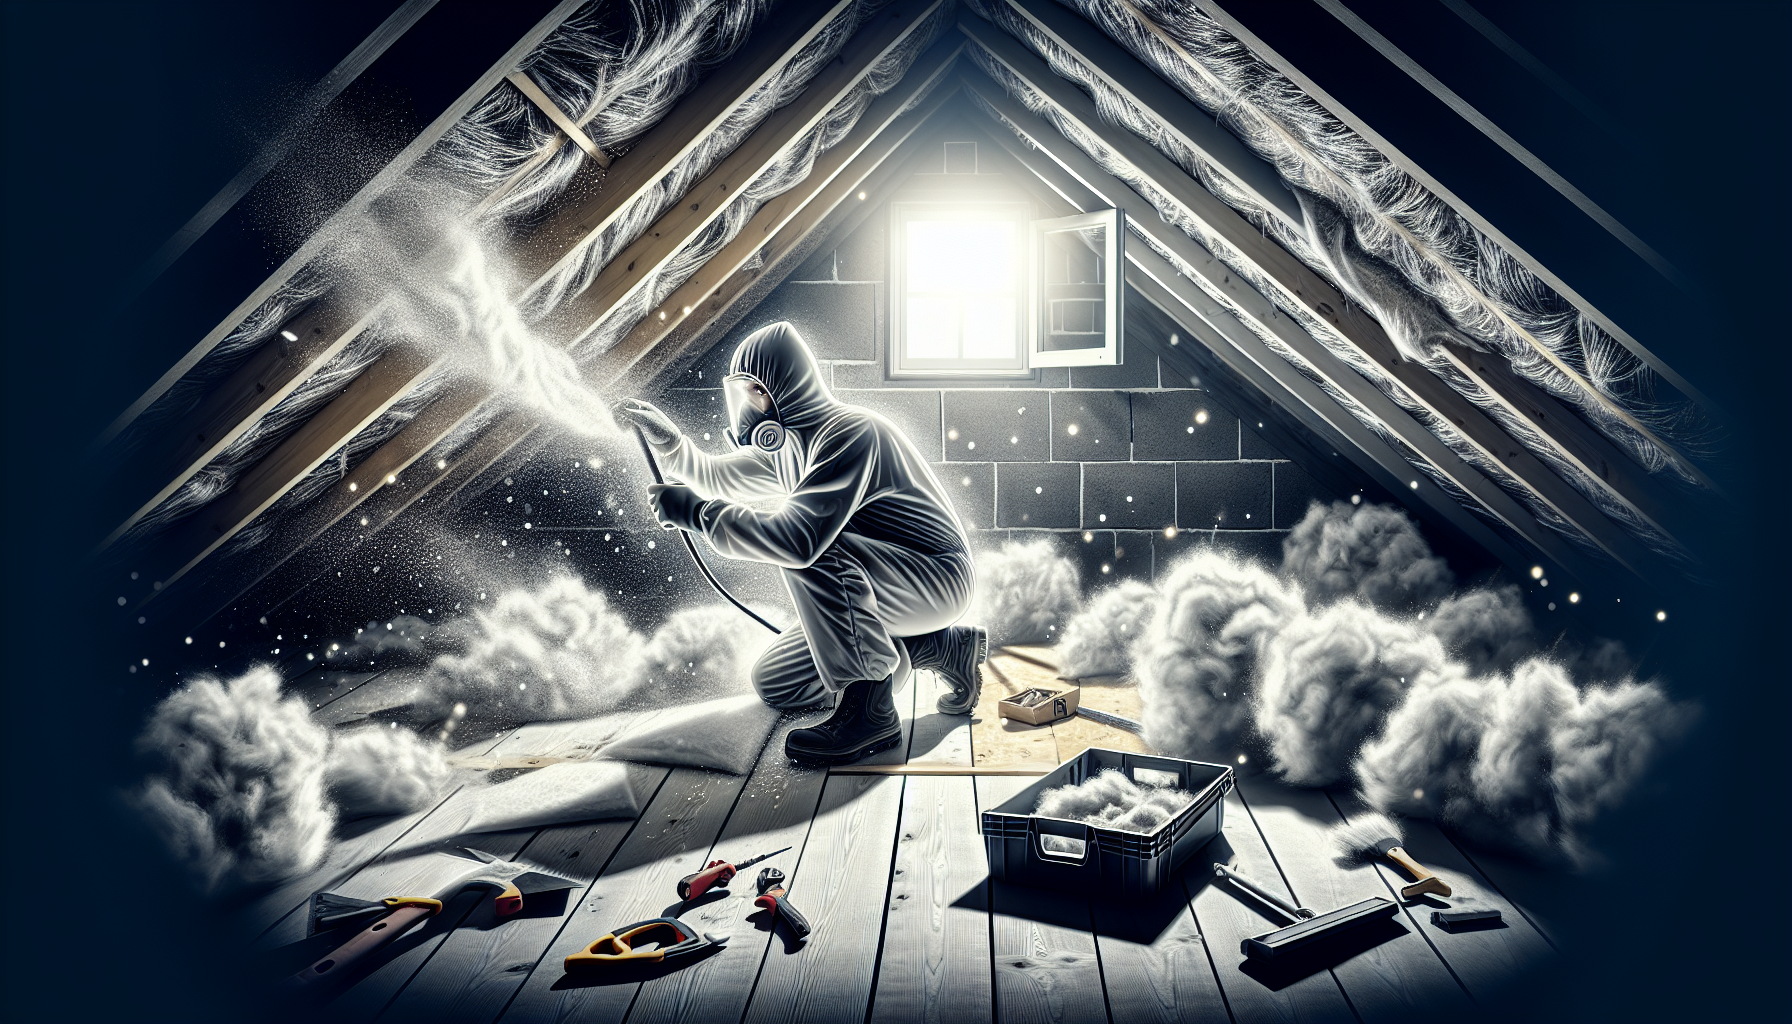 Illustration eines Eigenheimbesitzers, der Dämmarbeiten am Dachboden durchführt